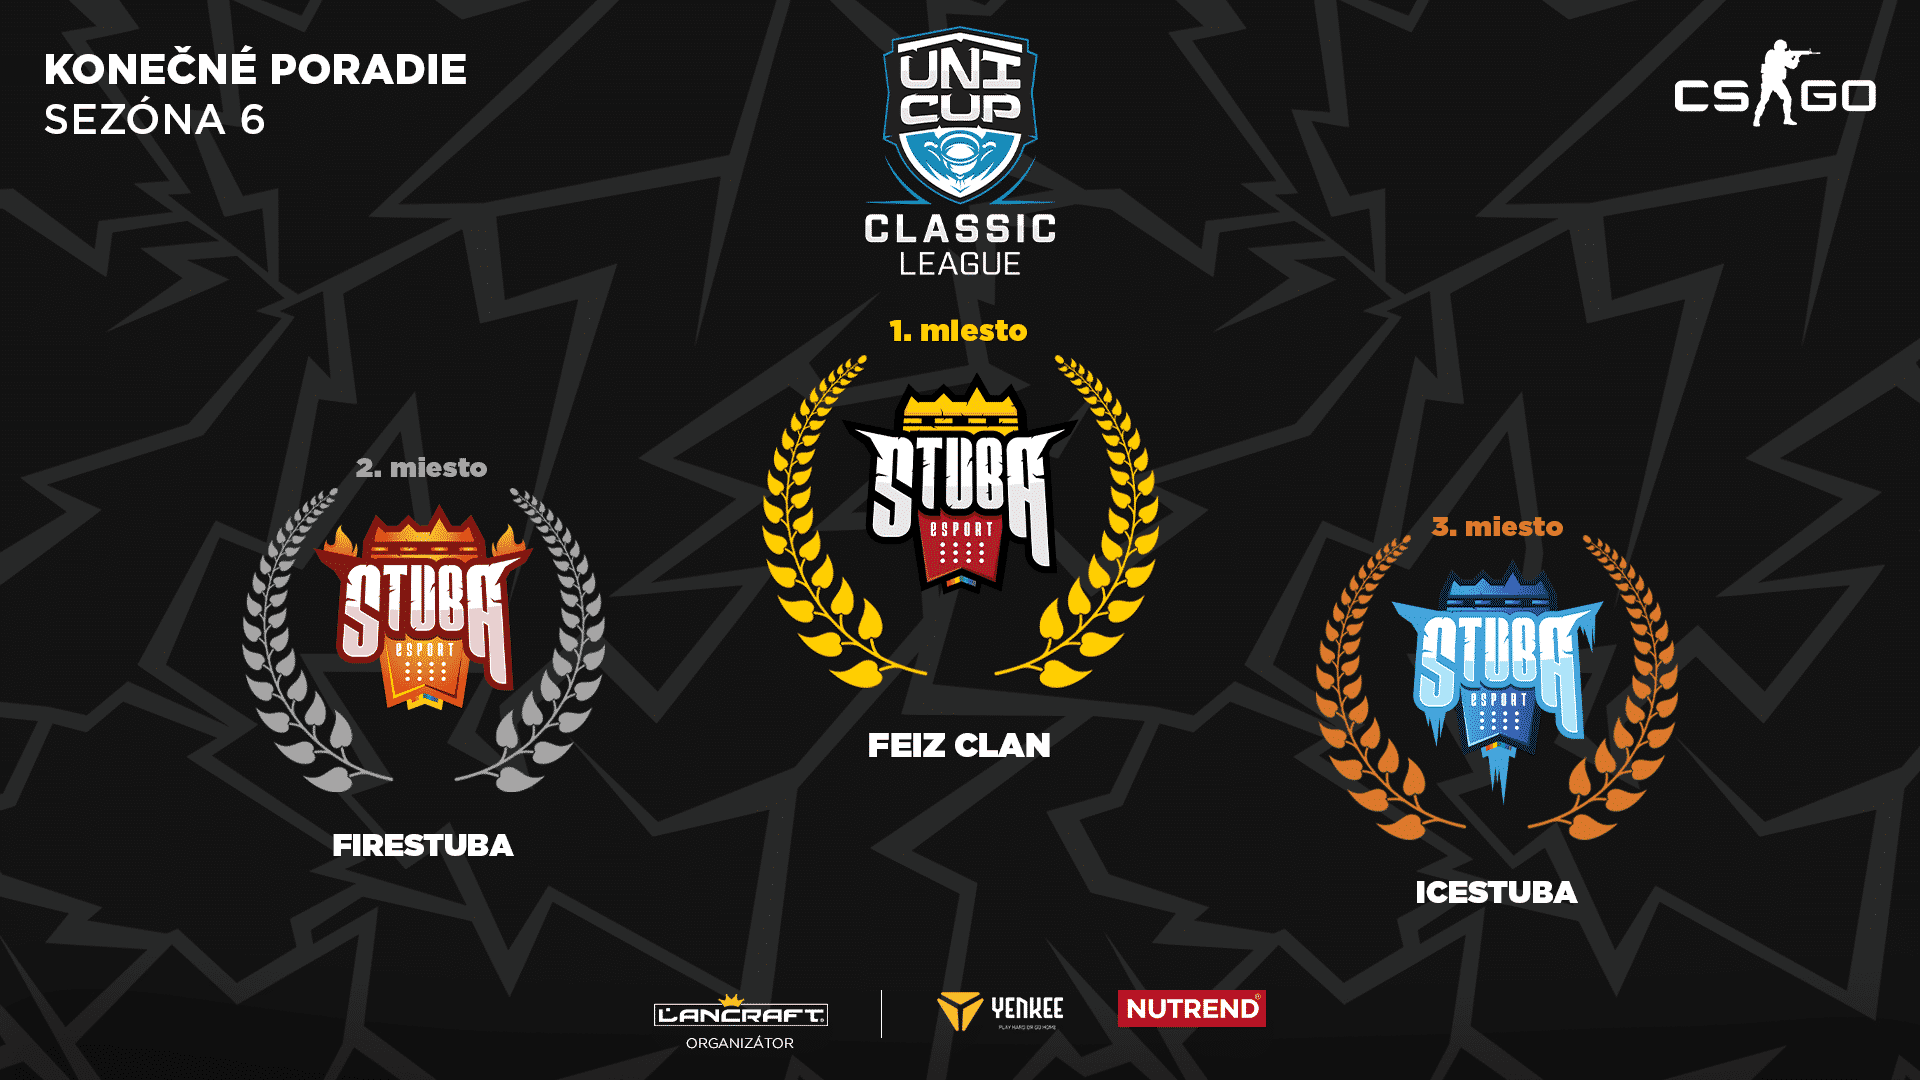 UniCup Classic League CS:GO